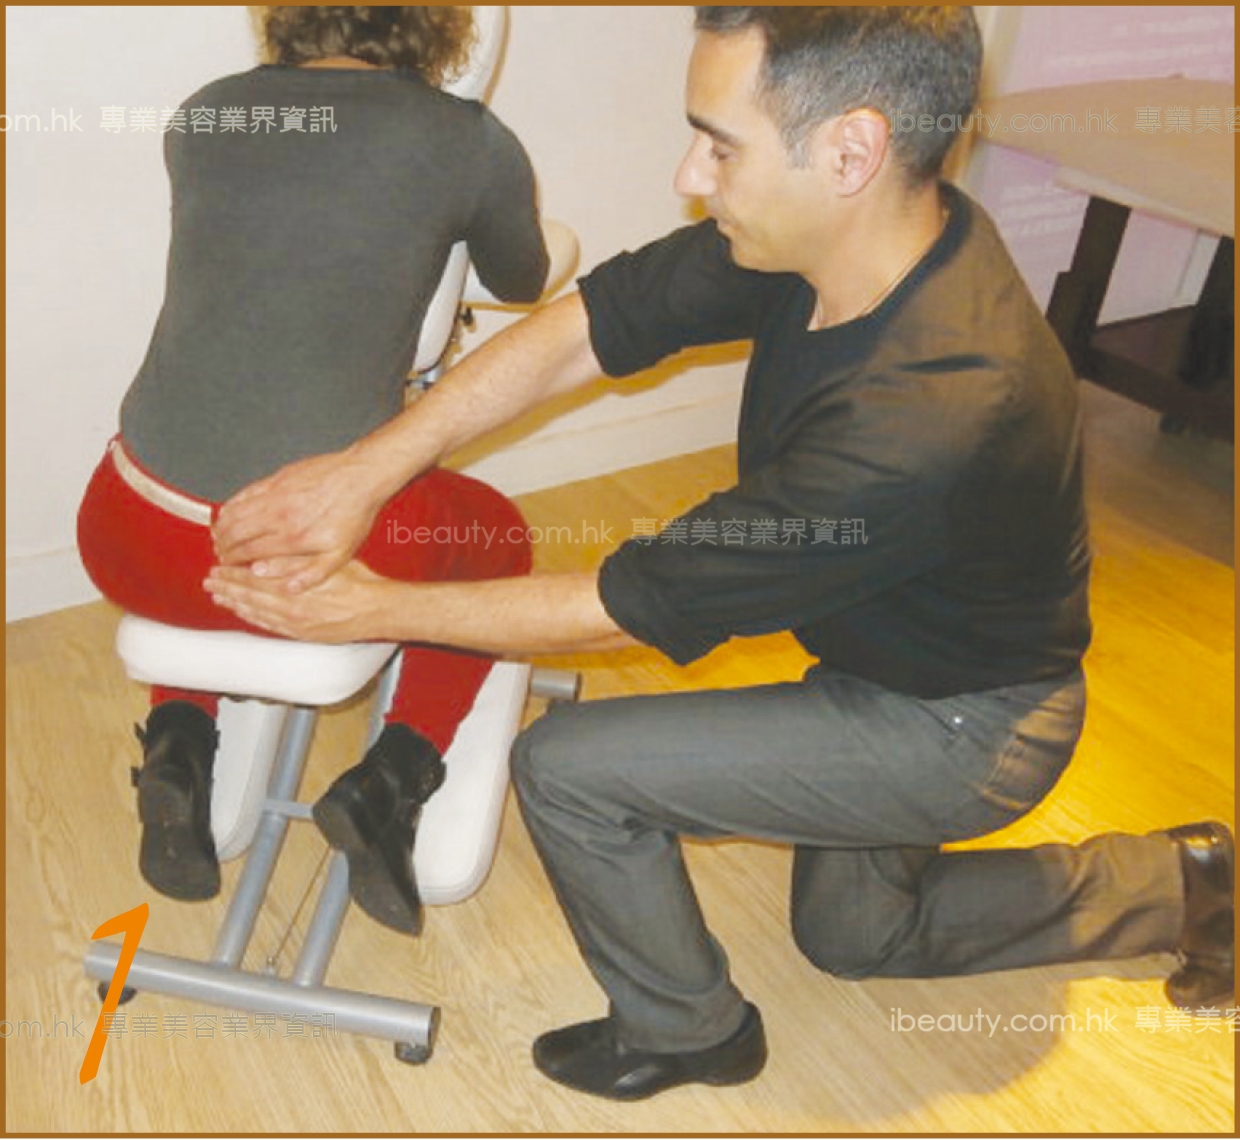 1-3 轻扫示范:按摩师双手由顾客尾椎开始,经过肚脐轴,直至右腿